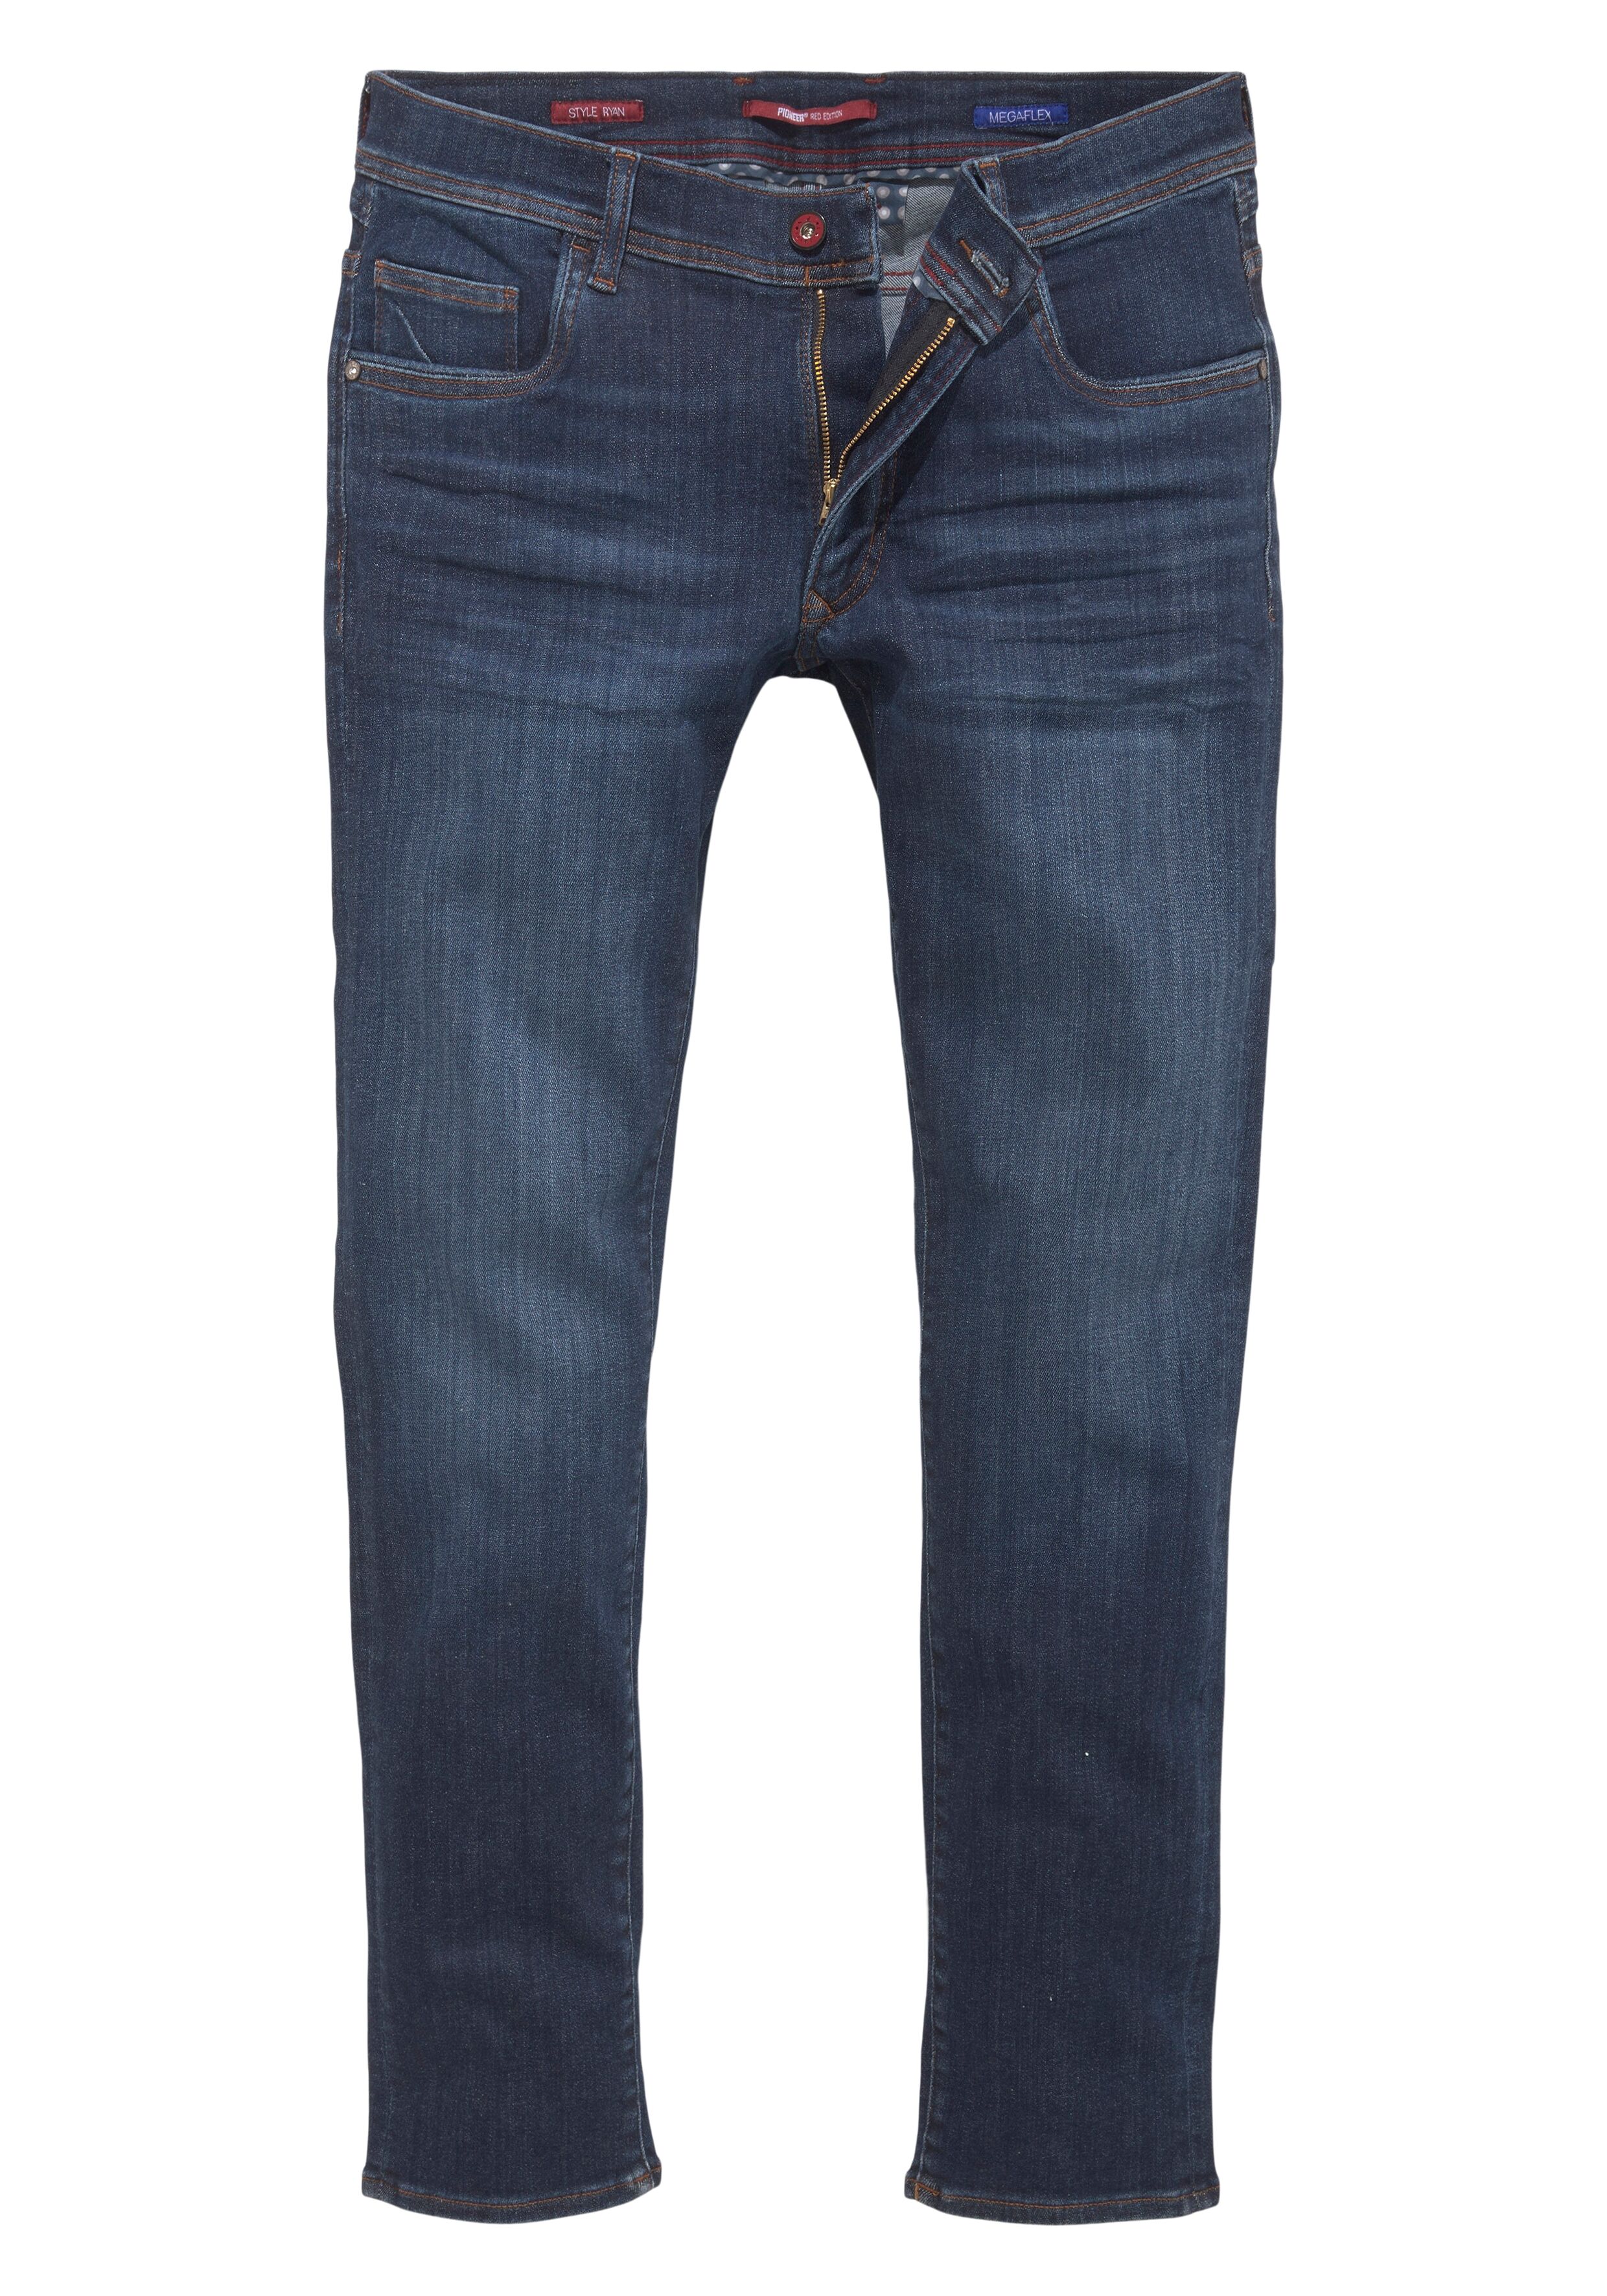 Pioneer Authentic Jeans Slim-fit-Jeans »Ryan« blau  30 31 32 33 34 36 38 40 42 44